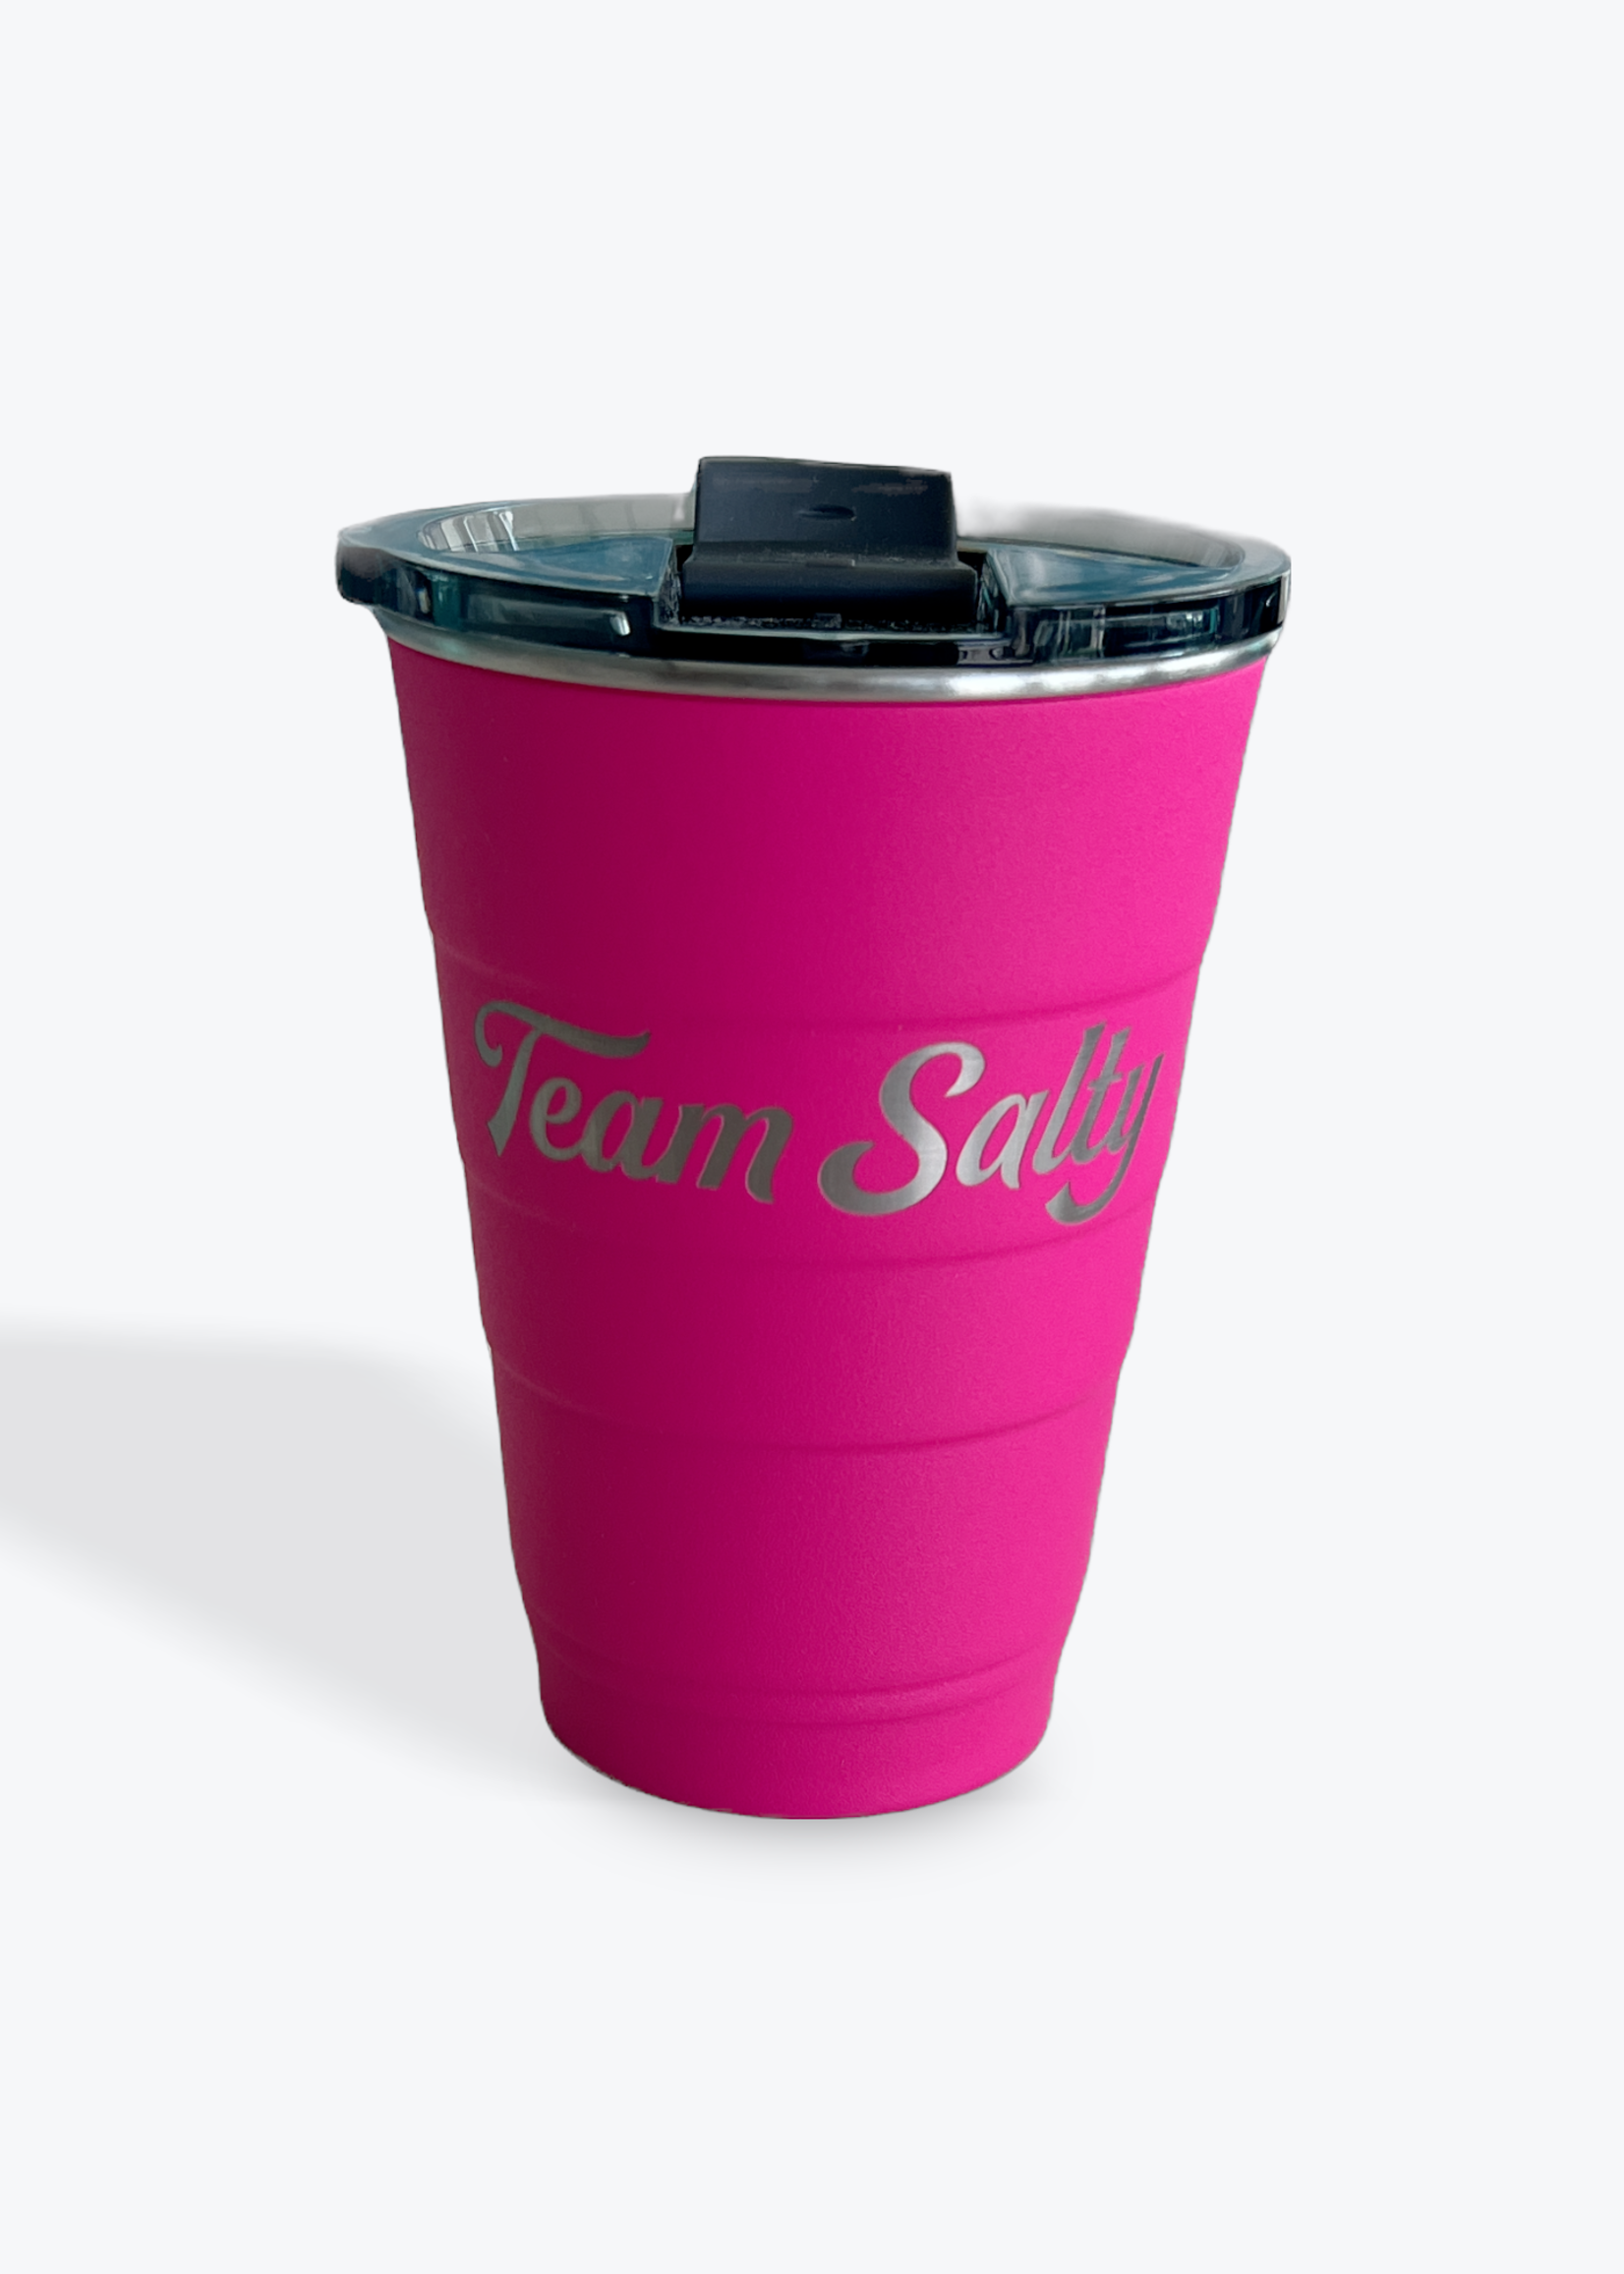 https://cdn.shoplightspeed.com/shops/617903/files/57161642/1652x2313x1/team-salty-team-salty-reusable-solo-cup-16oz.jpg